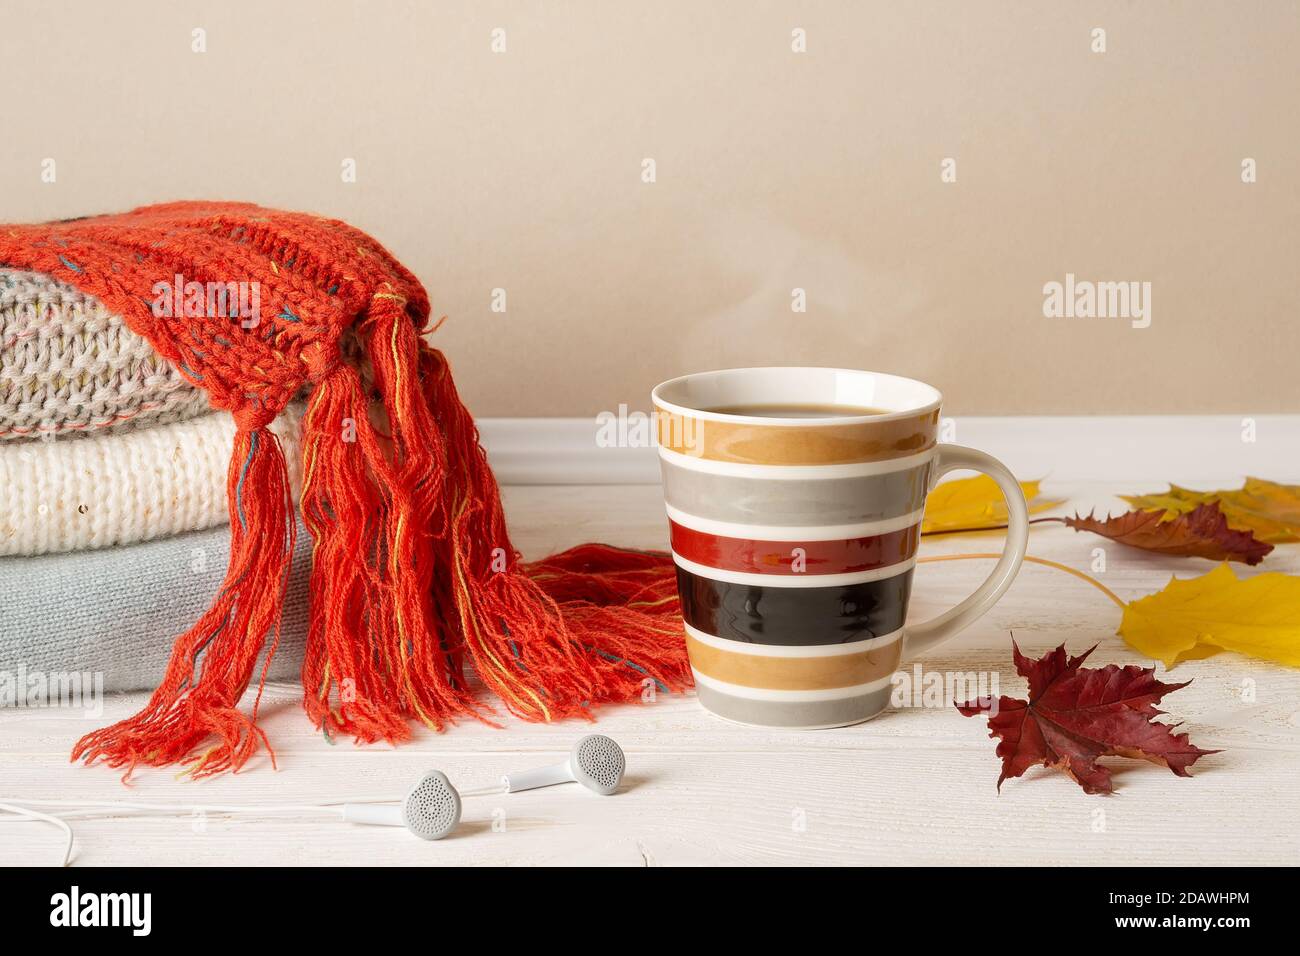 Gestreifte Tasse heißen dampfenden Kaffee oder Tee, Stapel von warmen Strickpullover und rot Fransen Schal und einige gelbe Herbstblätter über Holz rustikalen Oberfläche. Stockfoto